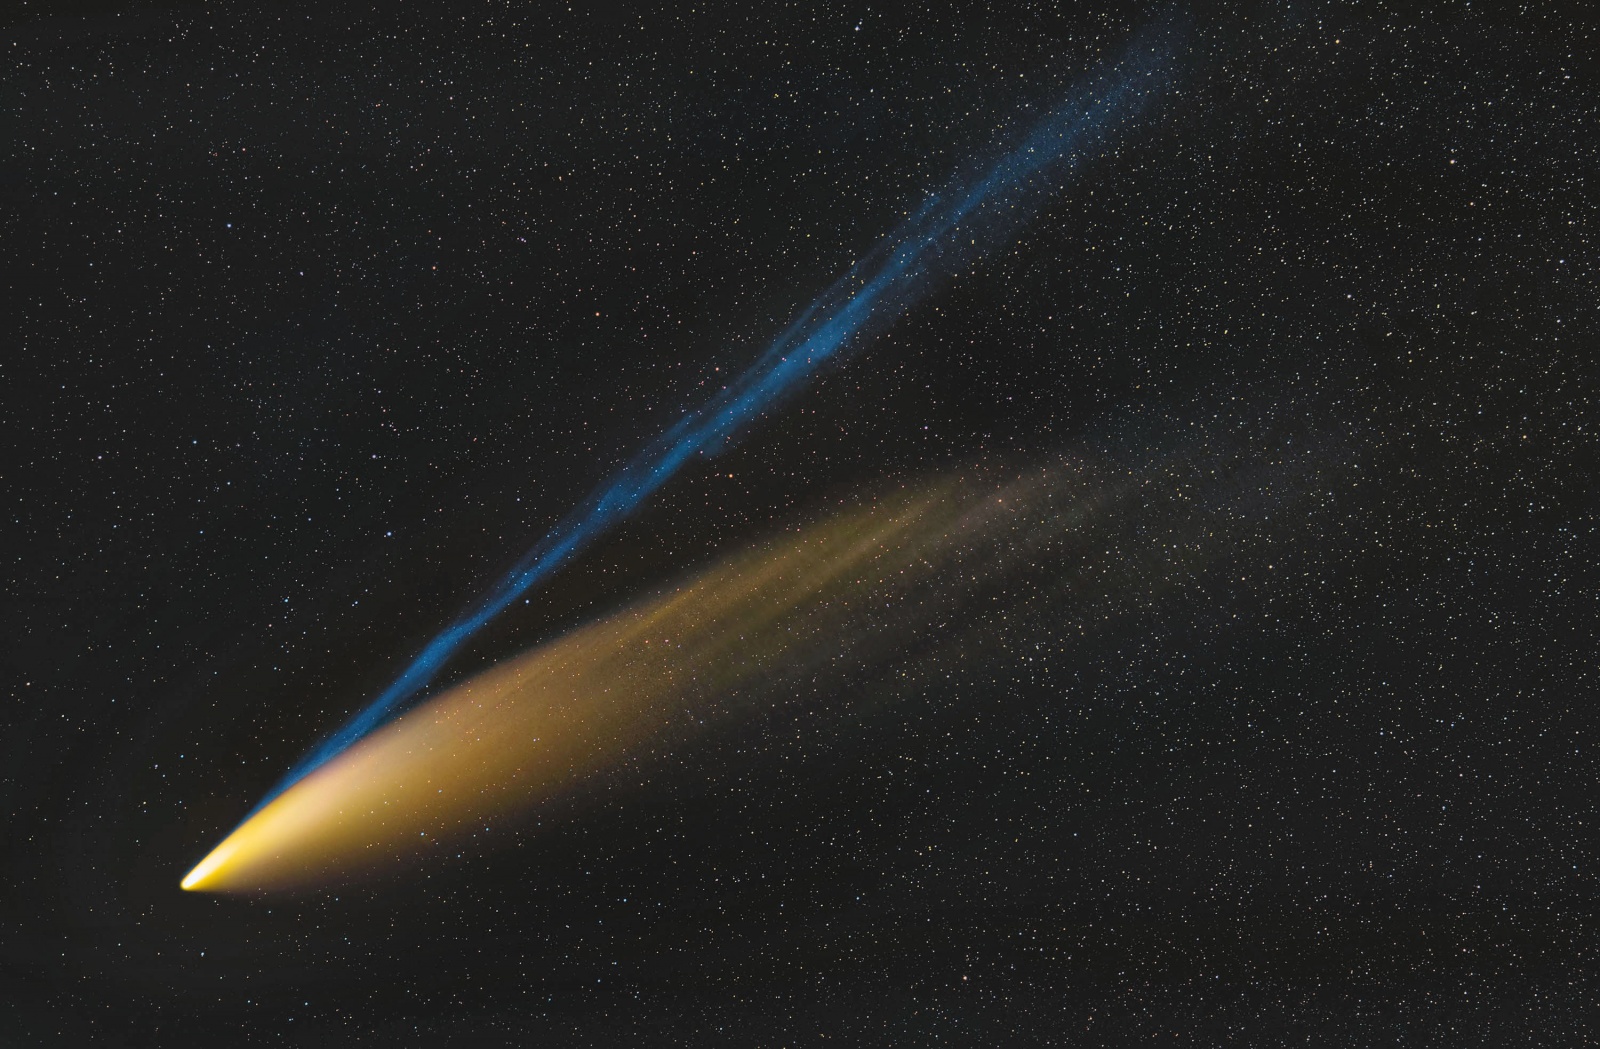 Comet-C2020-F3-Nowise-7s.thumb.jpg.0112594b2d1c267e2b27496ca6b3aabb.jpg